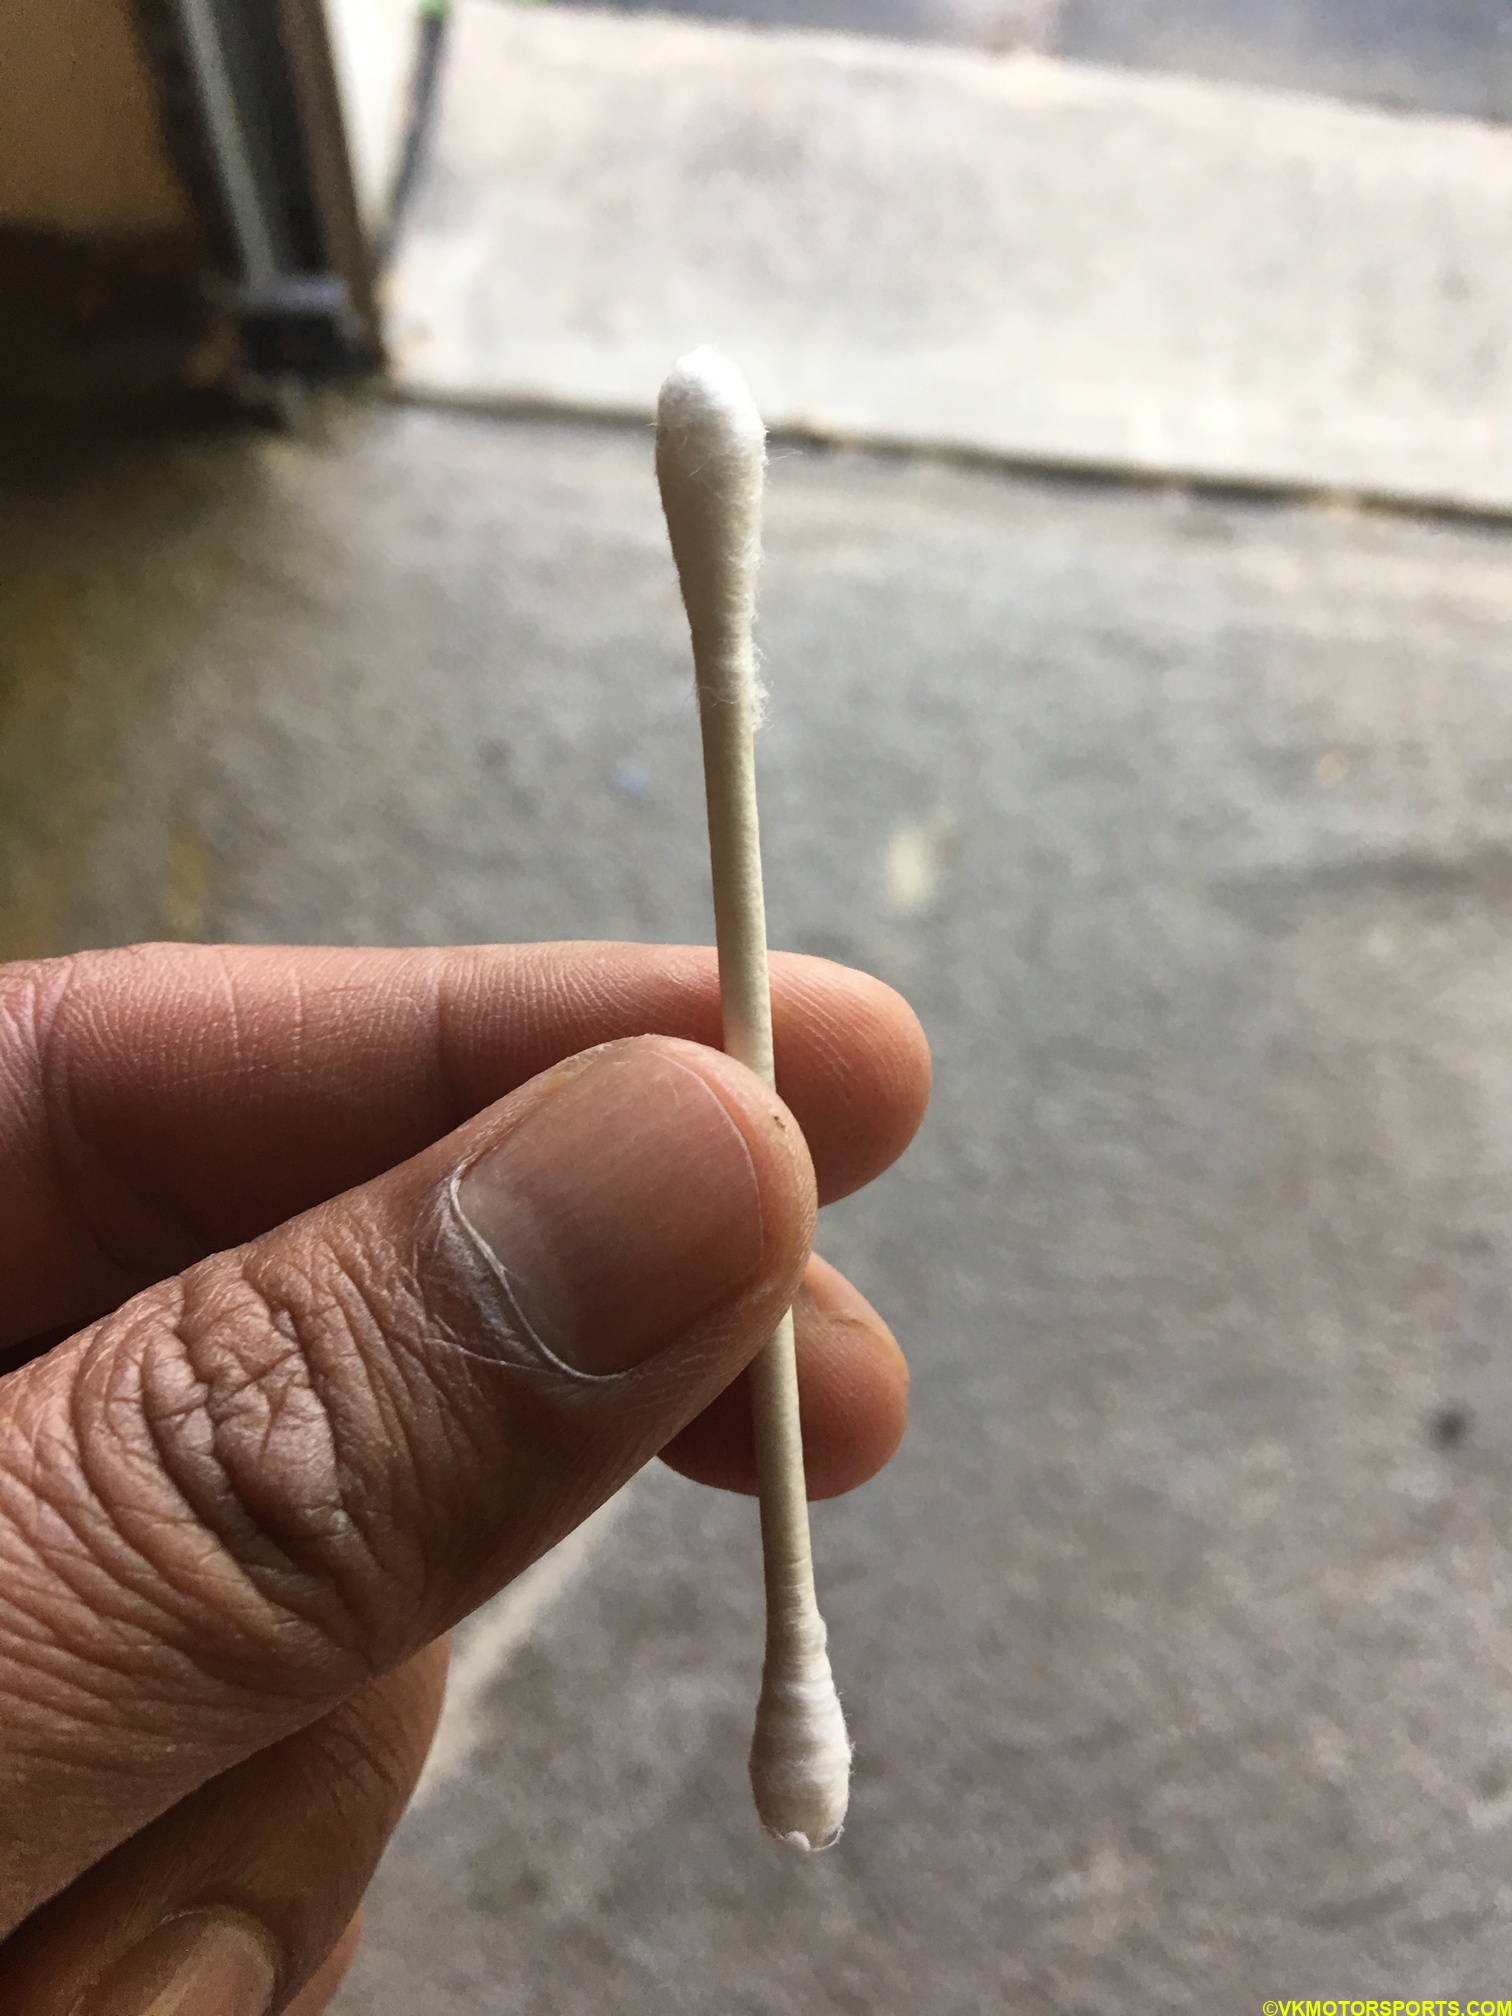 Q-tip as a dipstick